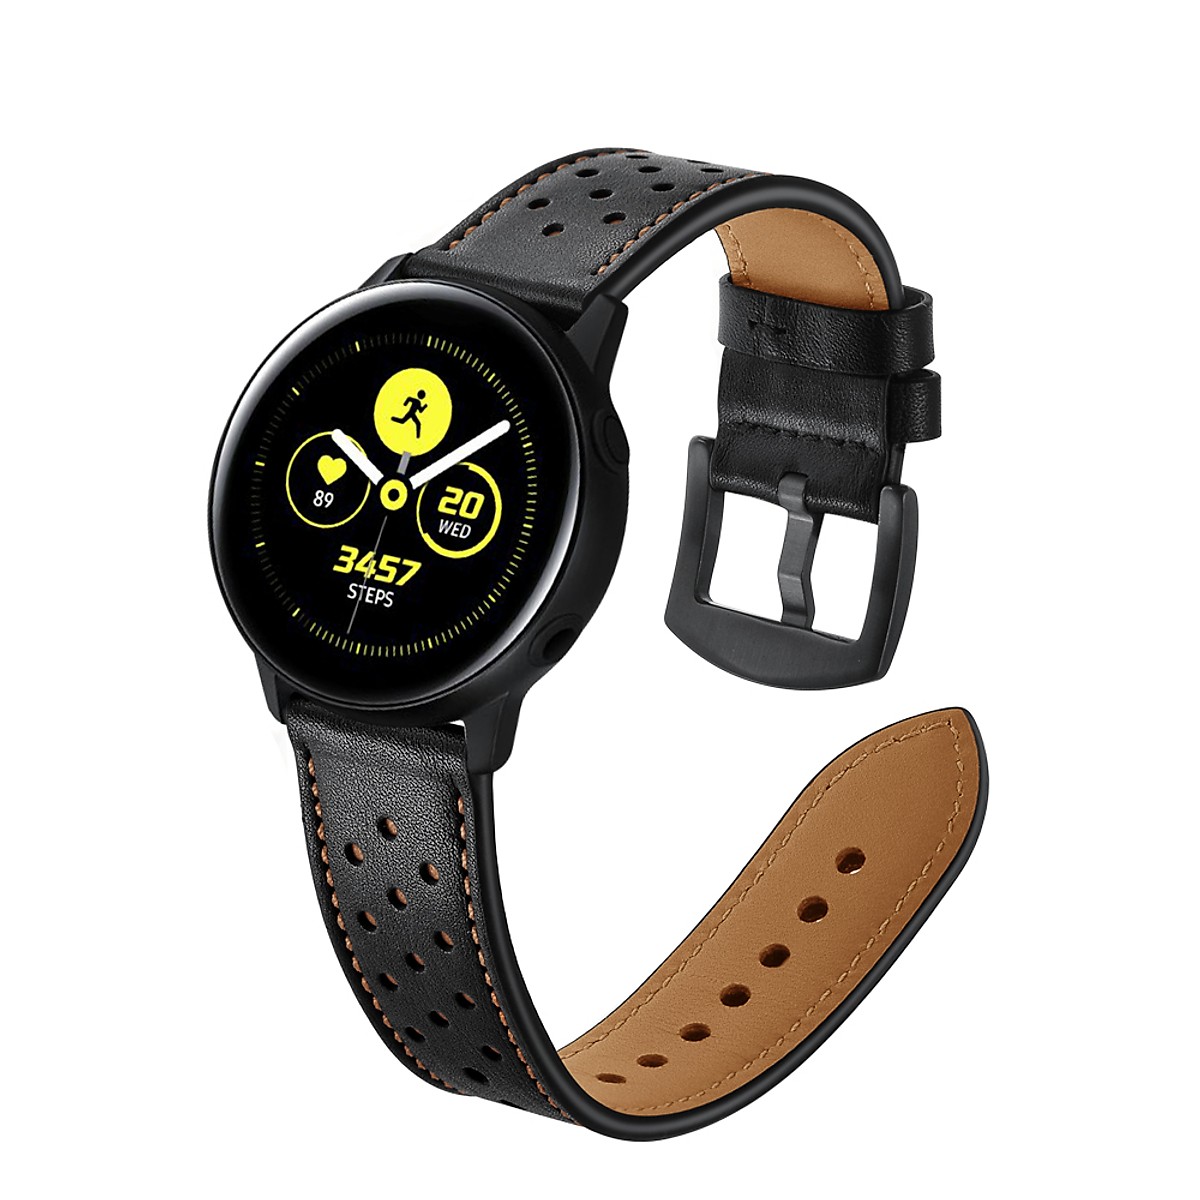 Dây Da Sport Leather Dành Cho Galaxy Watch Active 2, Galaxy Watch Active 1, Galaxy Watch 42 (Size 20mm)